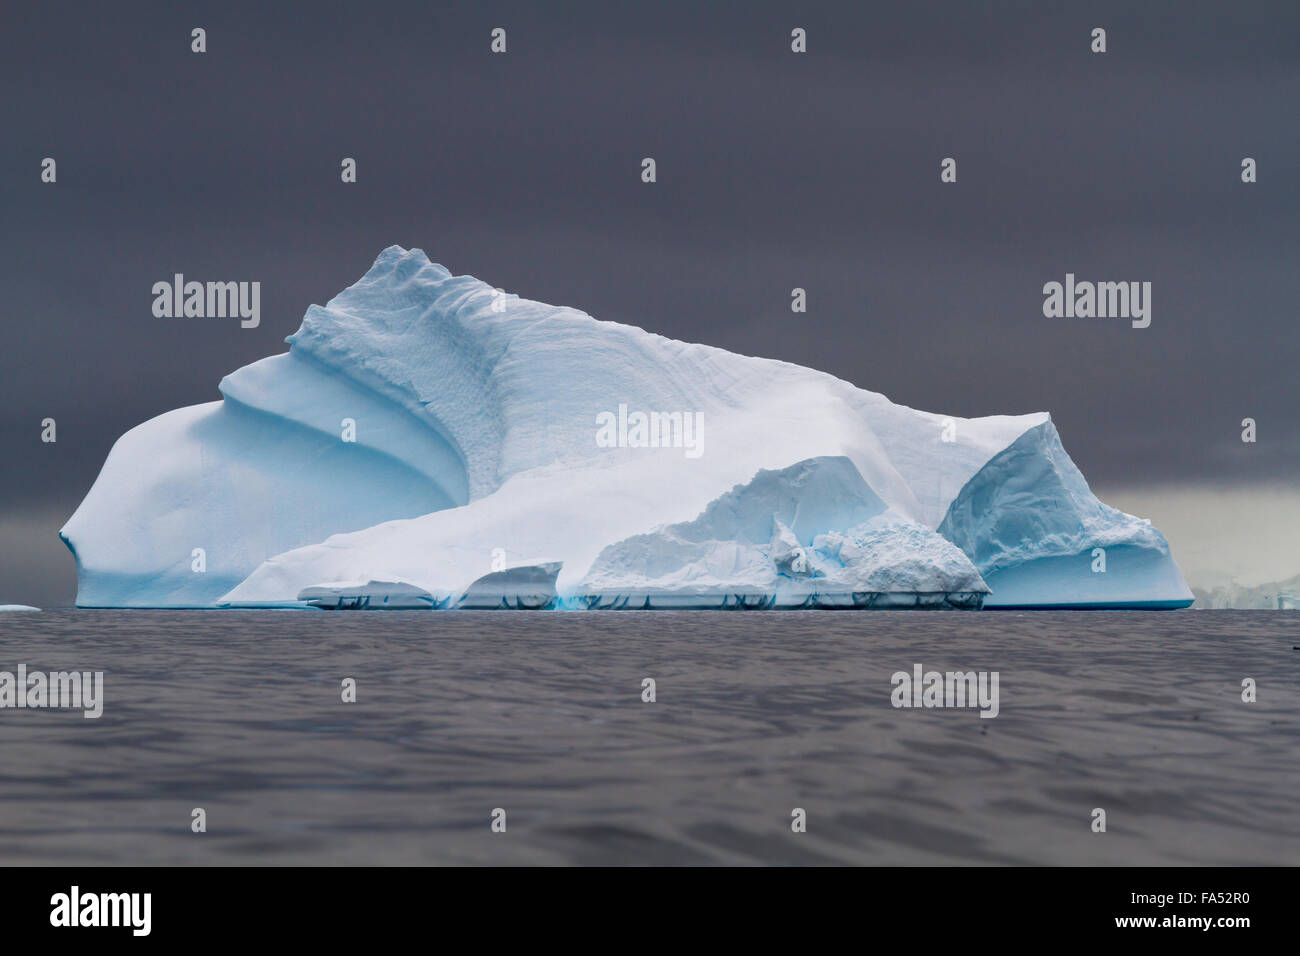 Drammatico iceberg contro un moody sky nell'Oceano antartico Foto Stock